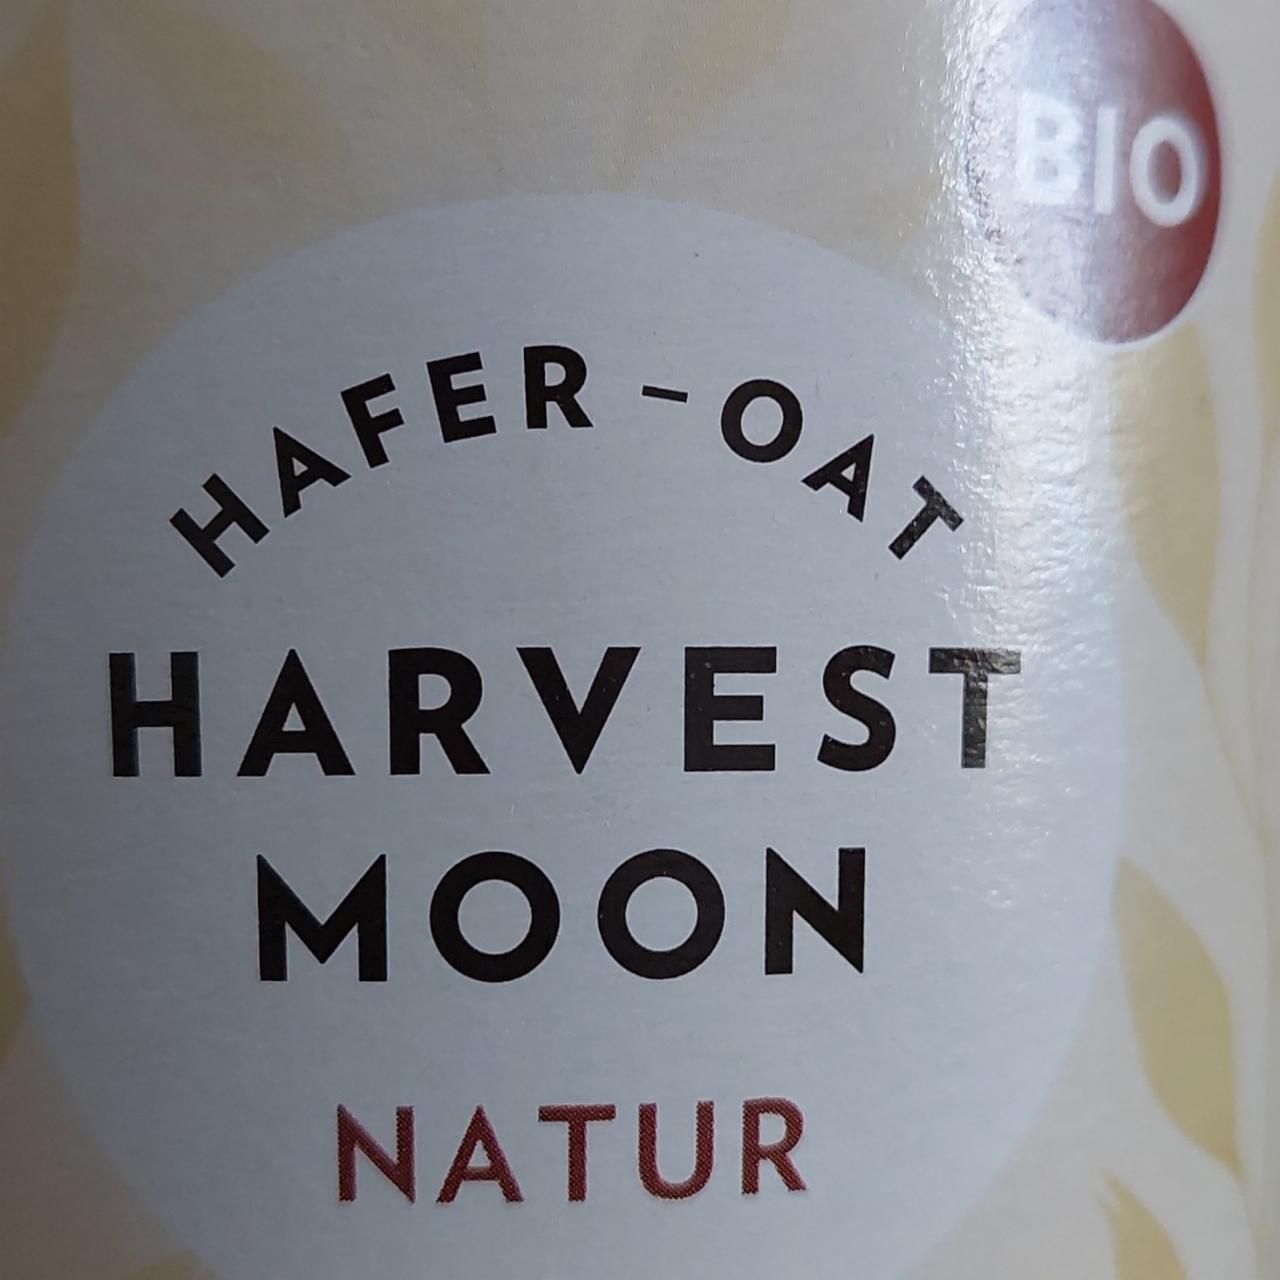 Fotografie - Hafer-Oat Natur Harvest Moon